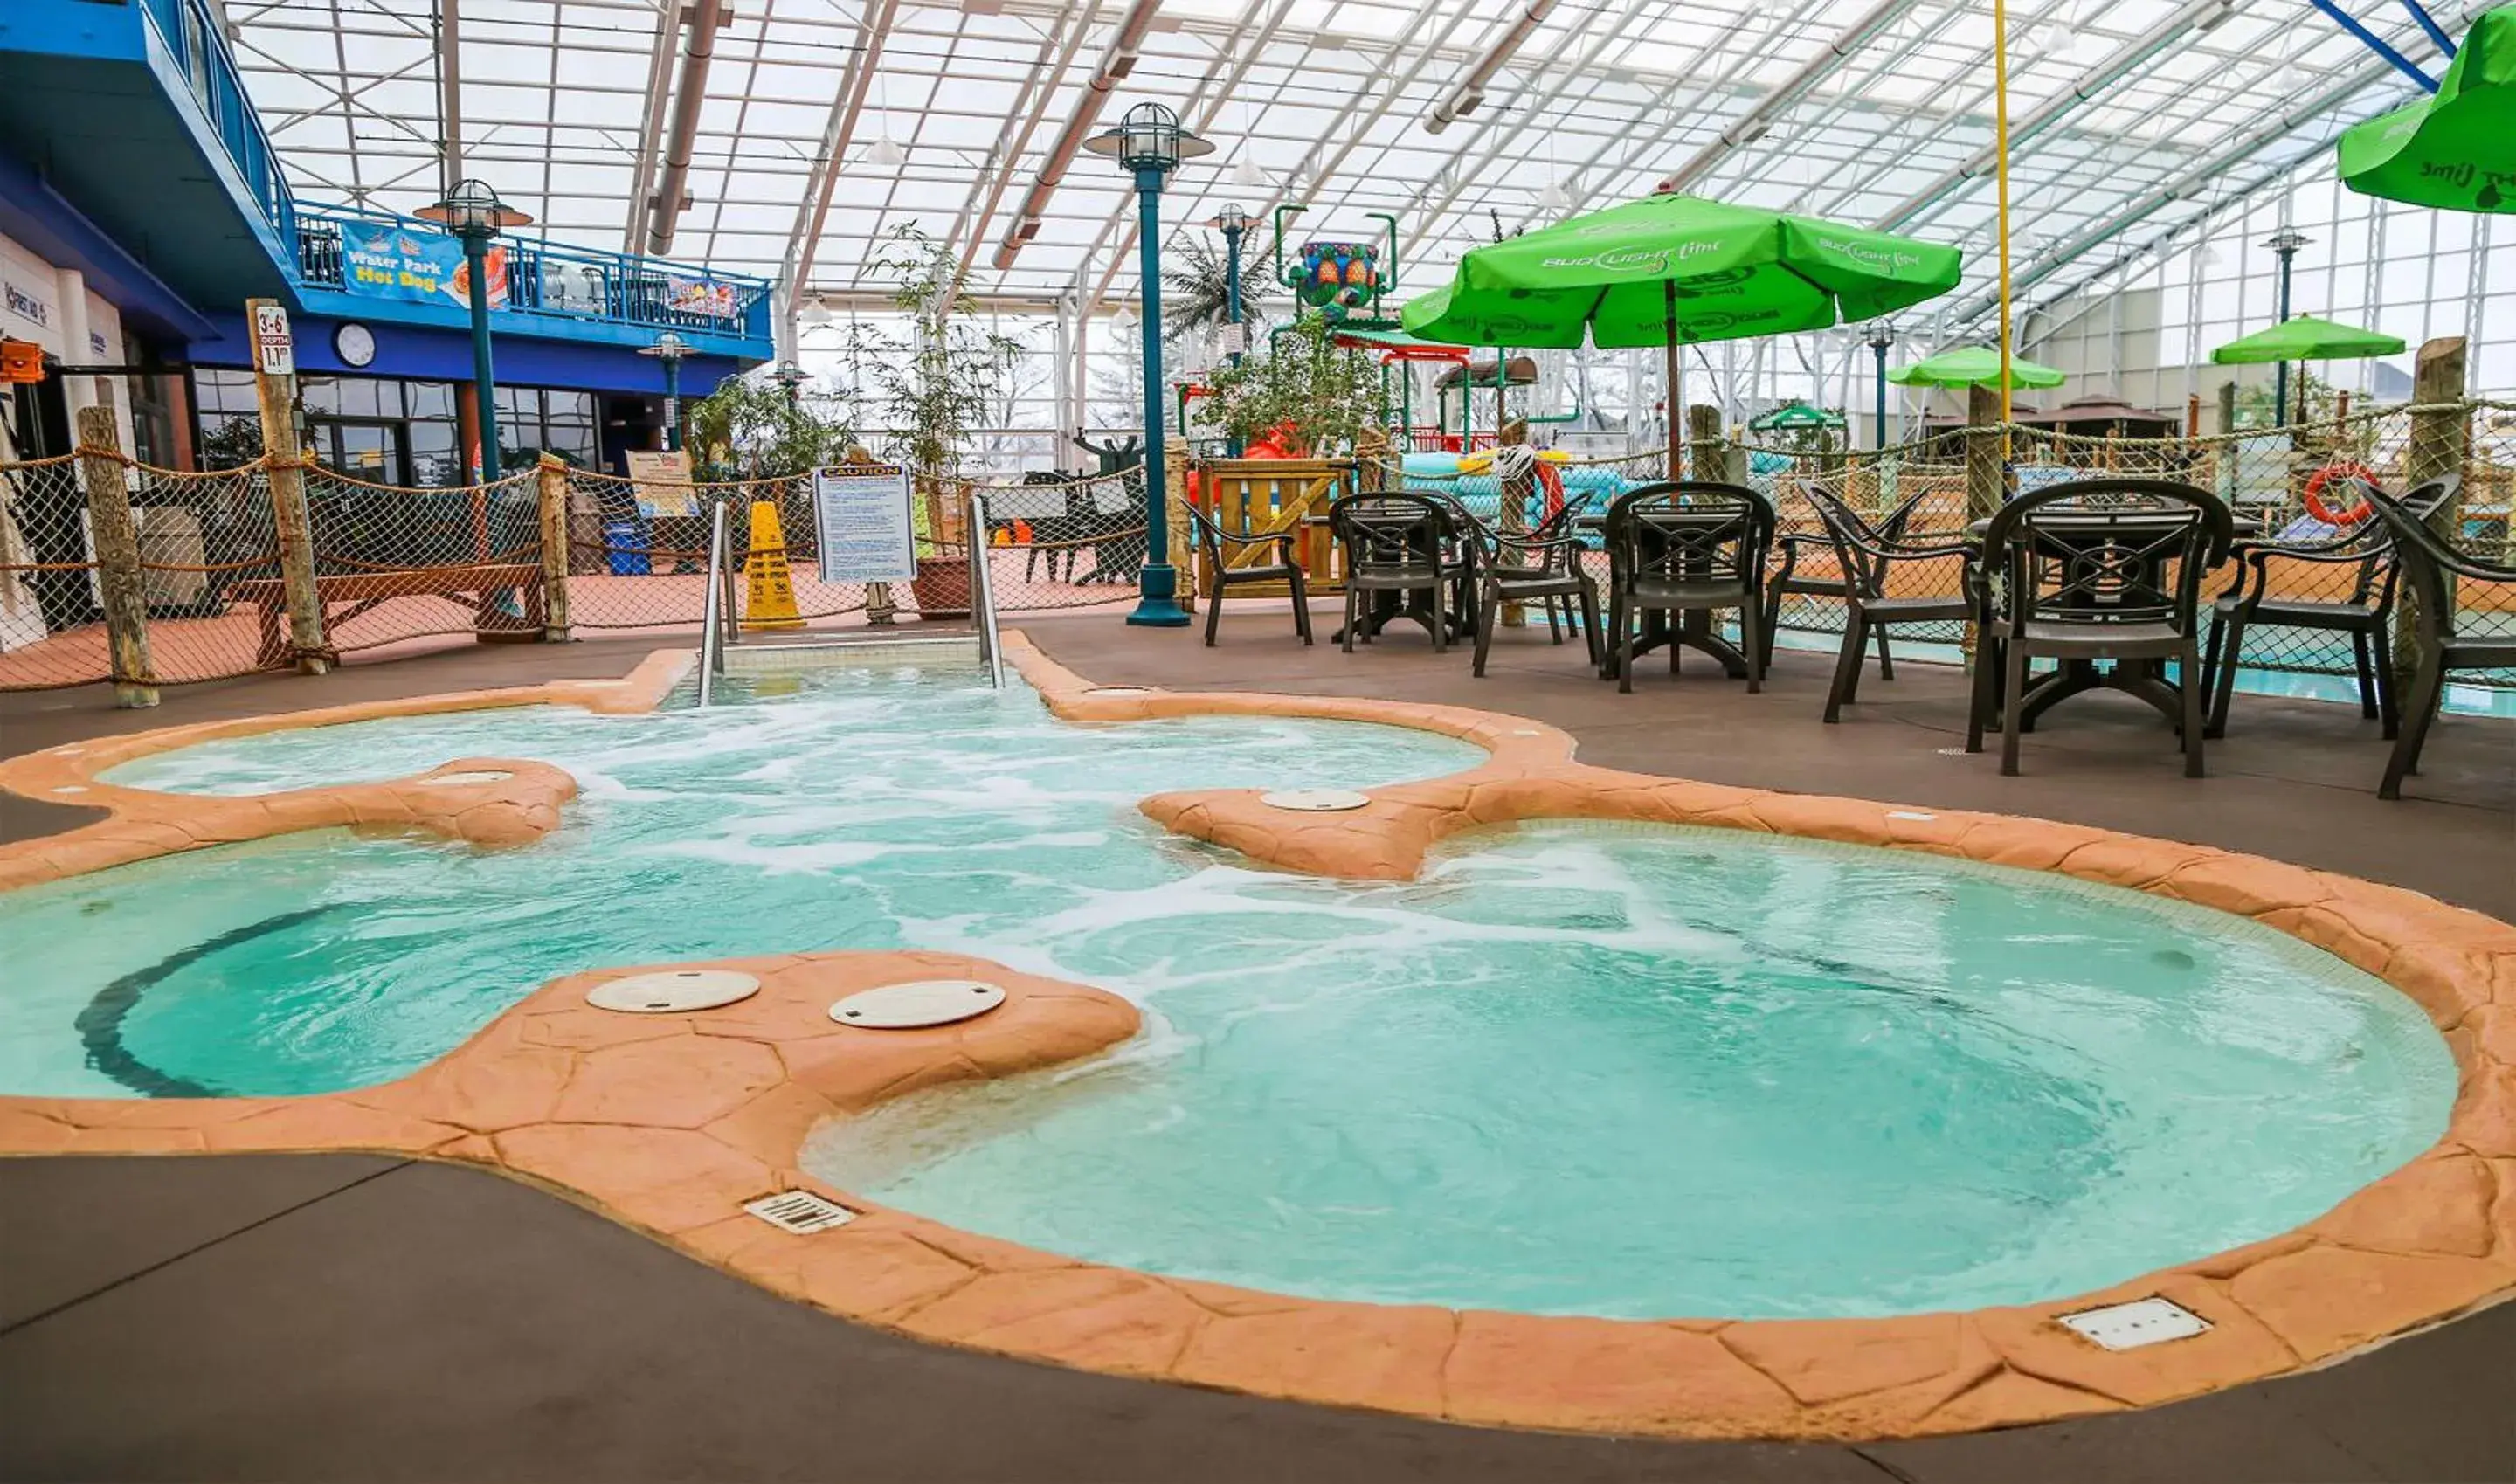 Hot Tub, Swimming Pool in Americana Waterpark Resort & Spa